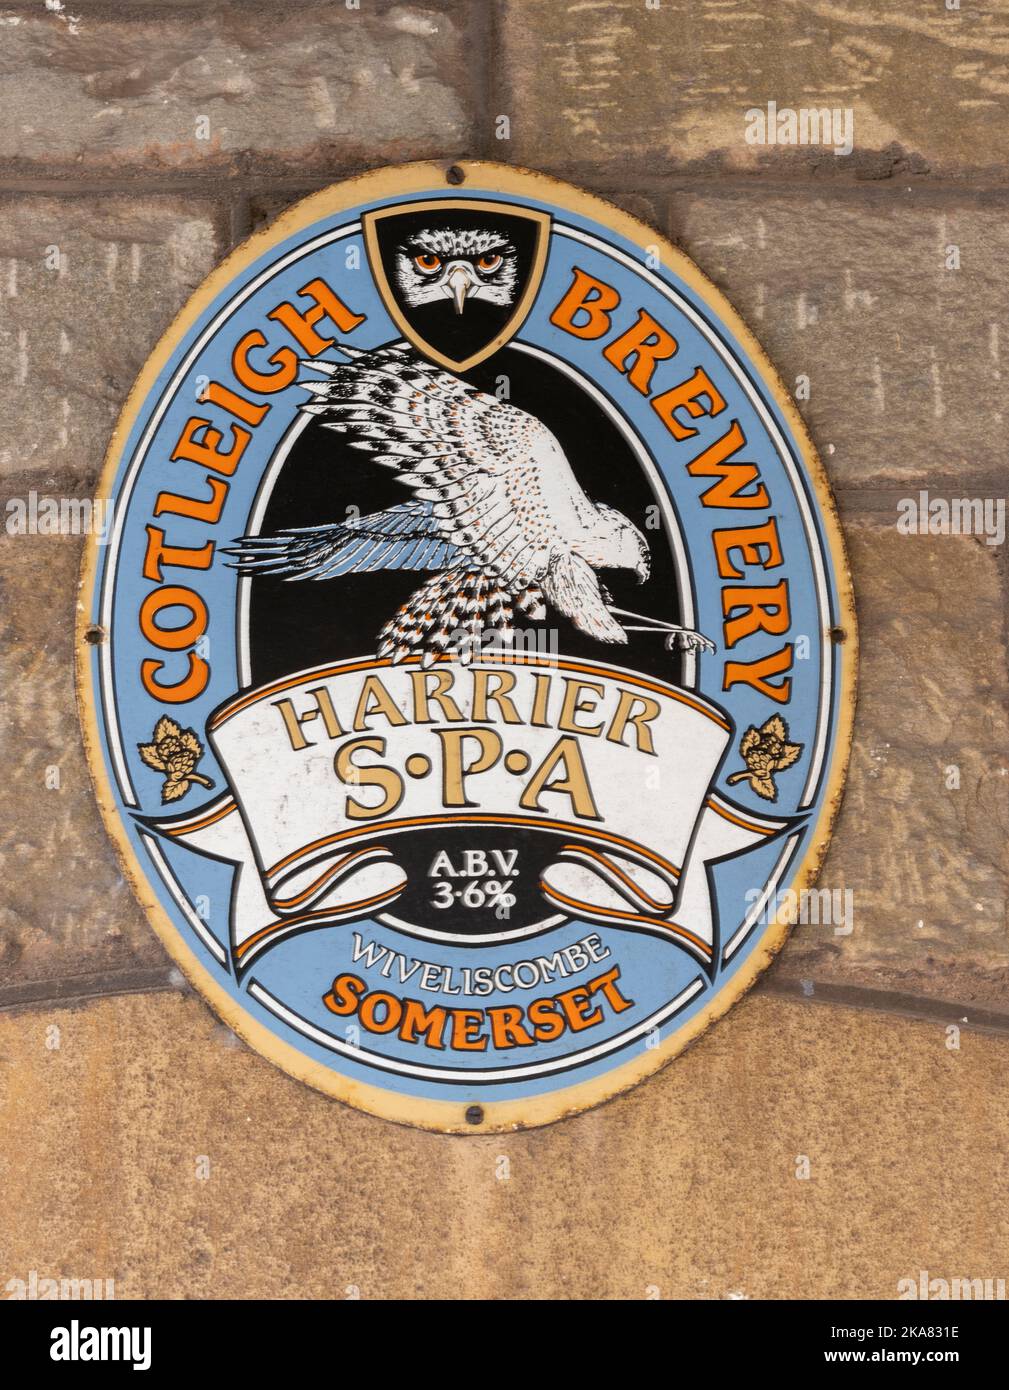 Werbung für Harrier S.P.A 9beer), gebraut von der Cotleigh Brewery, Wiveliscombe, Somerset, England, Großbritannien Stockfoto